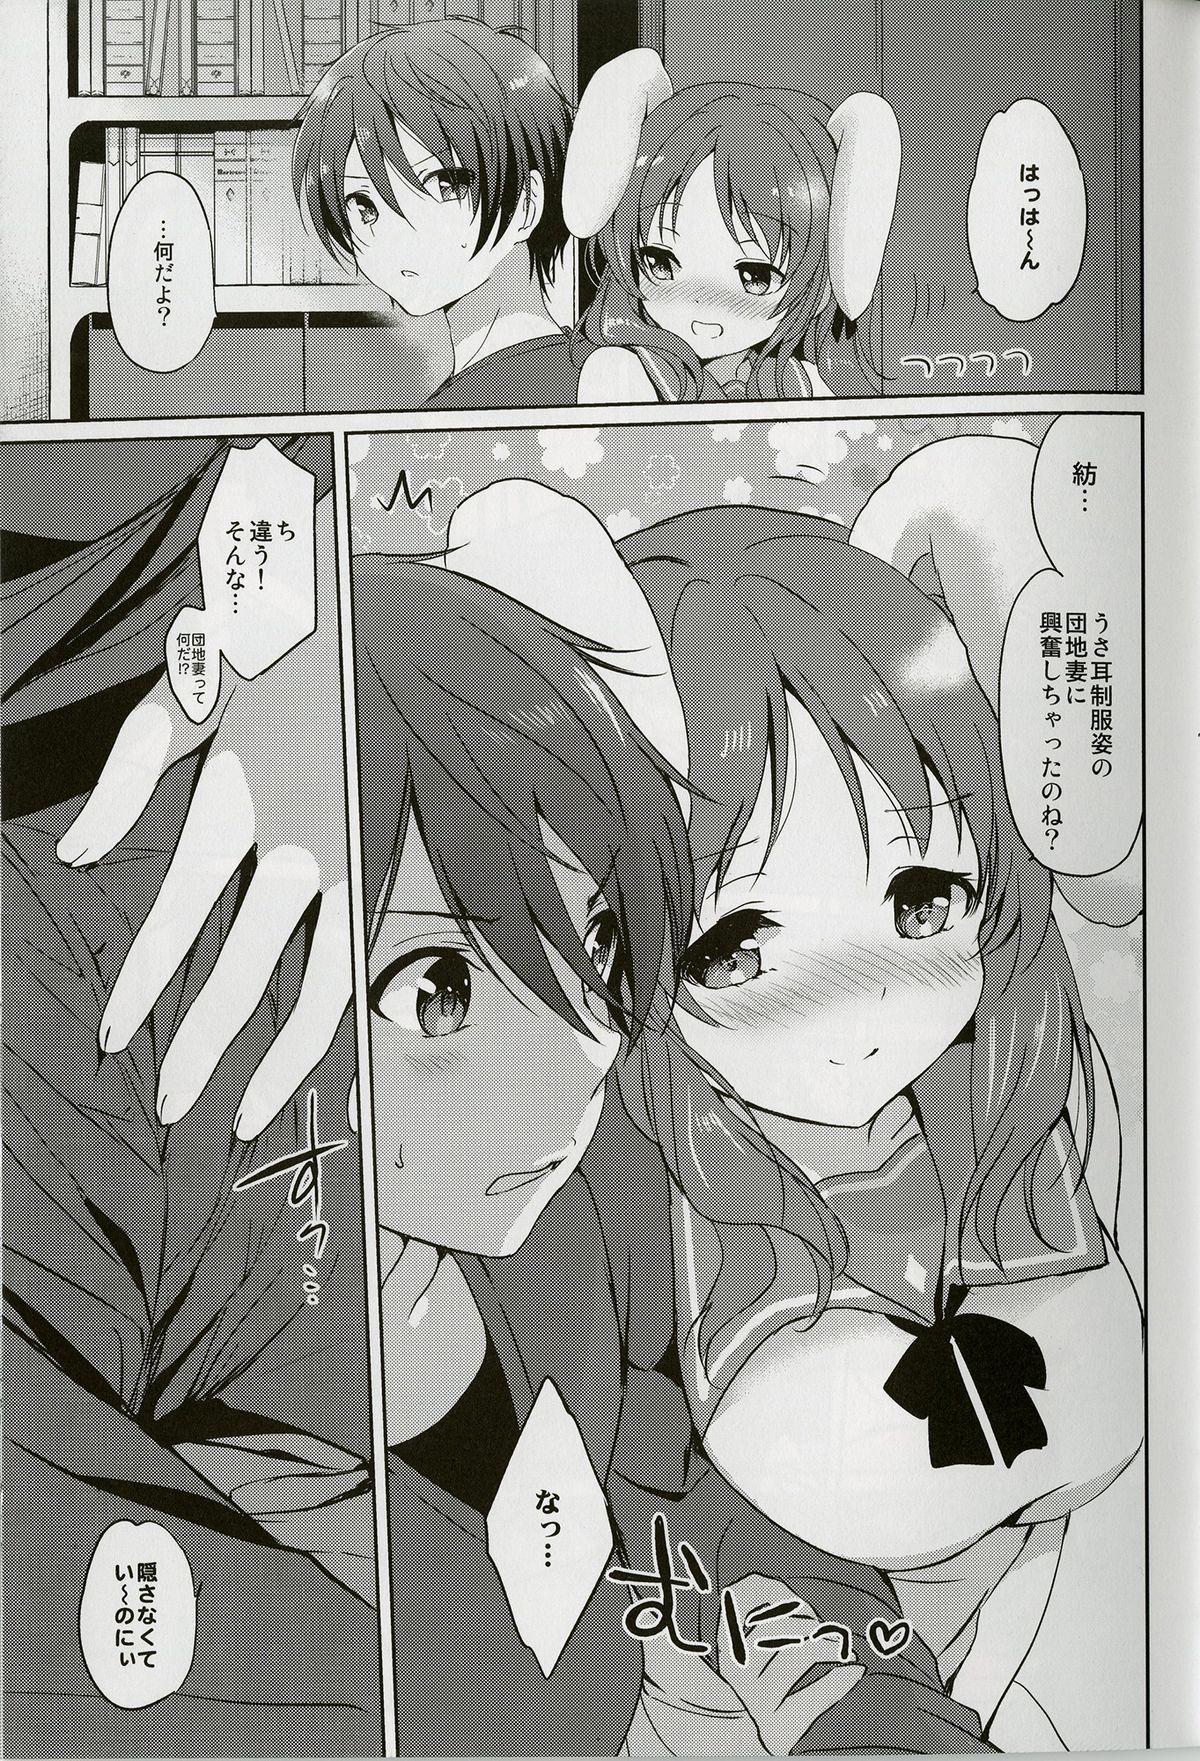 Panties Horoyoi Rabbit - Nagi no asukara Vip - Page 7